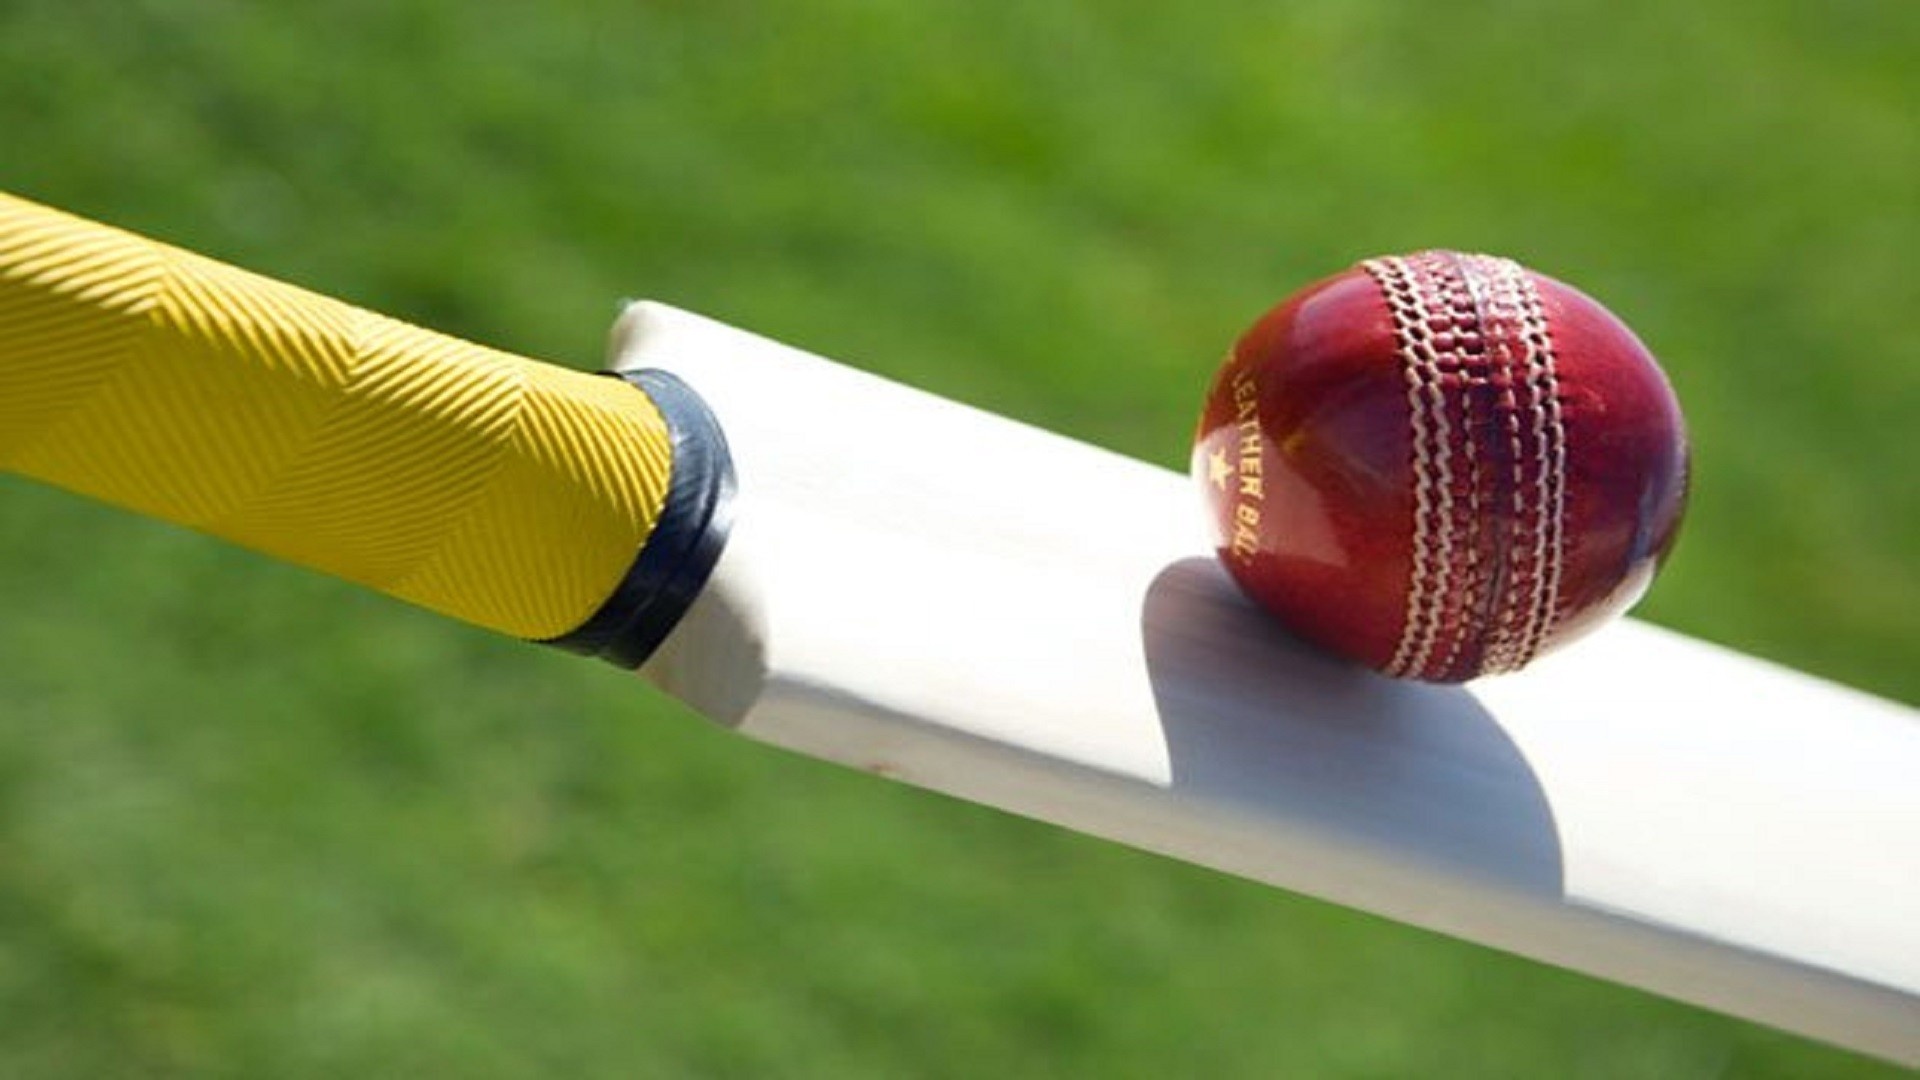 Cricket: Modern sports equipment for a bat-and-ball game, Cricket bat, Cricket ball. 1920x1080 Full HD Wallpaper.